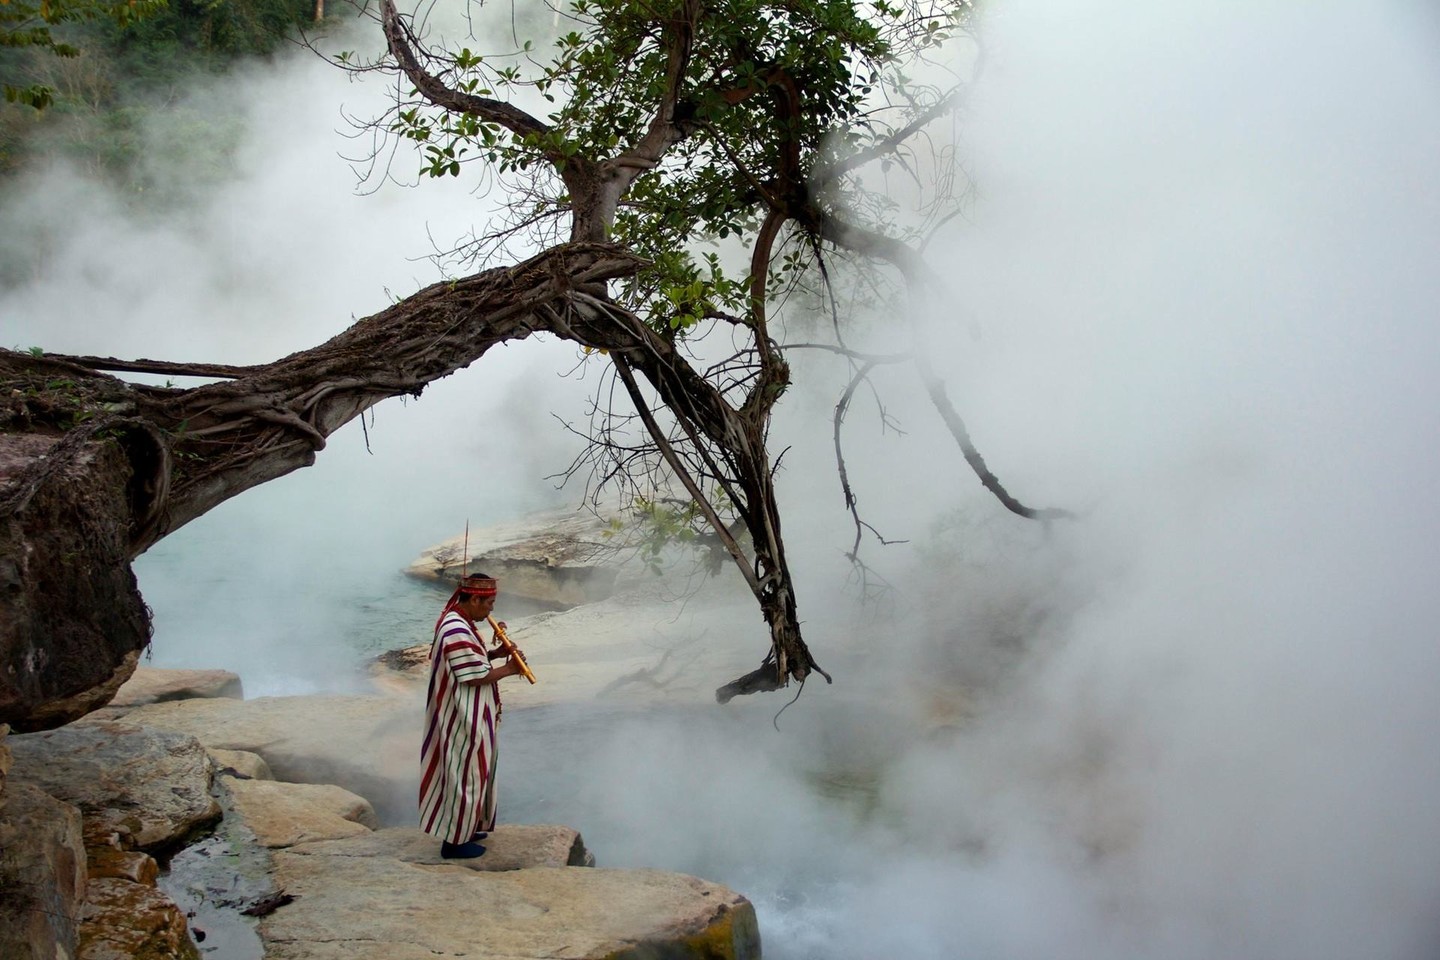 Mayantuyacu, Peru (Pietų Amerika) tekanti verdanti upė, apie kurią sklando įvairiausi mitai ir sakmės, perduodamos iš kartos į kartą ten gyvenančių ašananinkų genties žmonių.<br>Sofia Ruzo (The Boiling River Project/Facebook) nuotr.